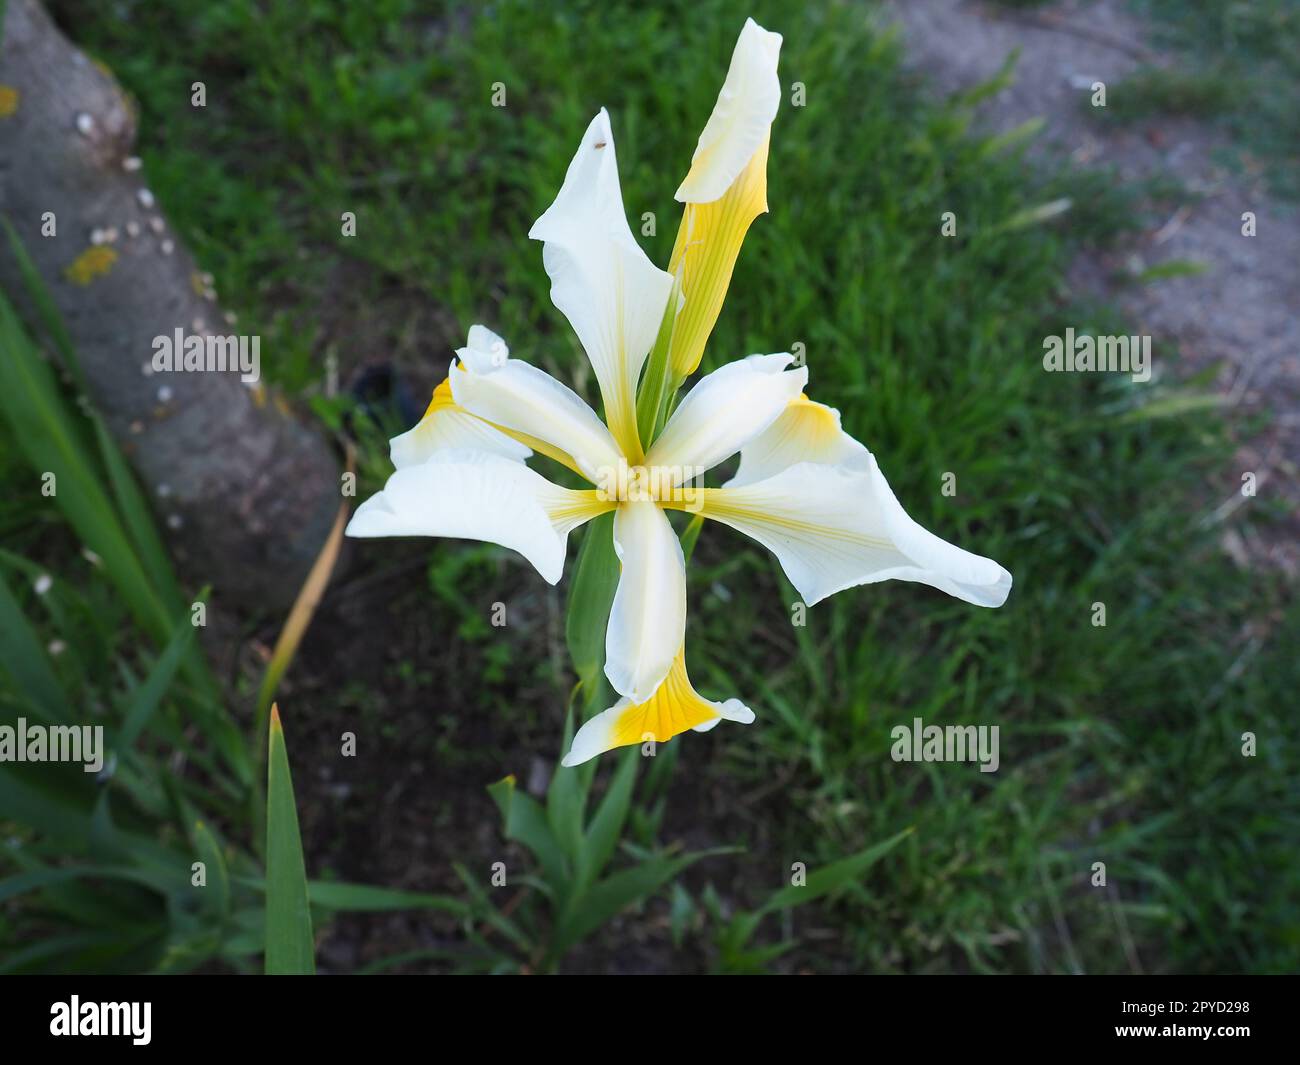 Iris ist eine Gattung mehrjähriger Rhizome der Iris-Familie. Ein Zierkraut mit großen, leuchtenden Blumen. Anmutige, zarte Blume von weißer Farbe mit gelben Adern. Grüne Leaves im Hintergrund Stockfoto